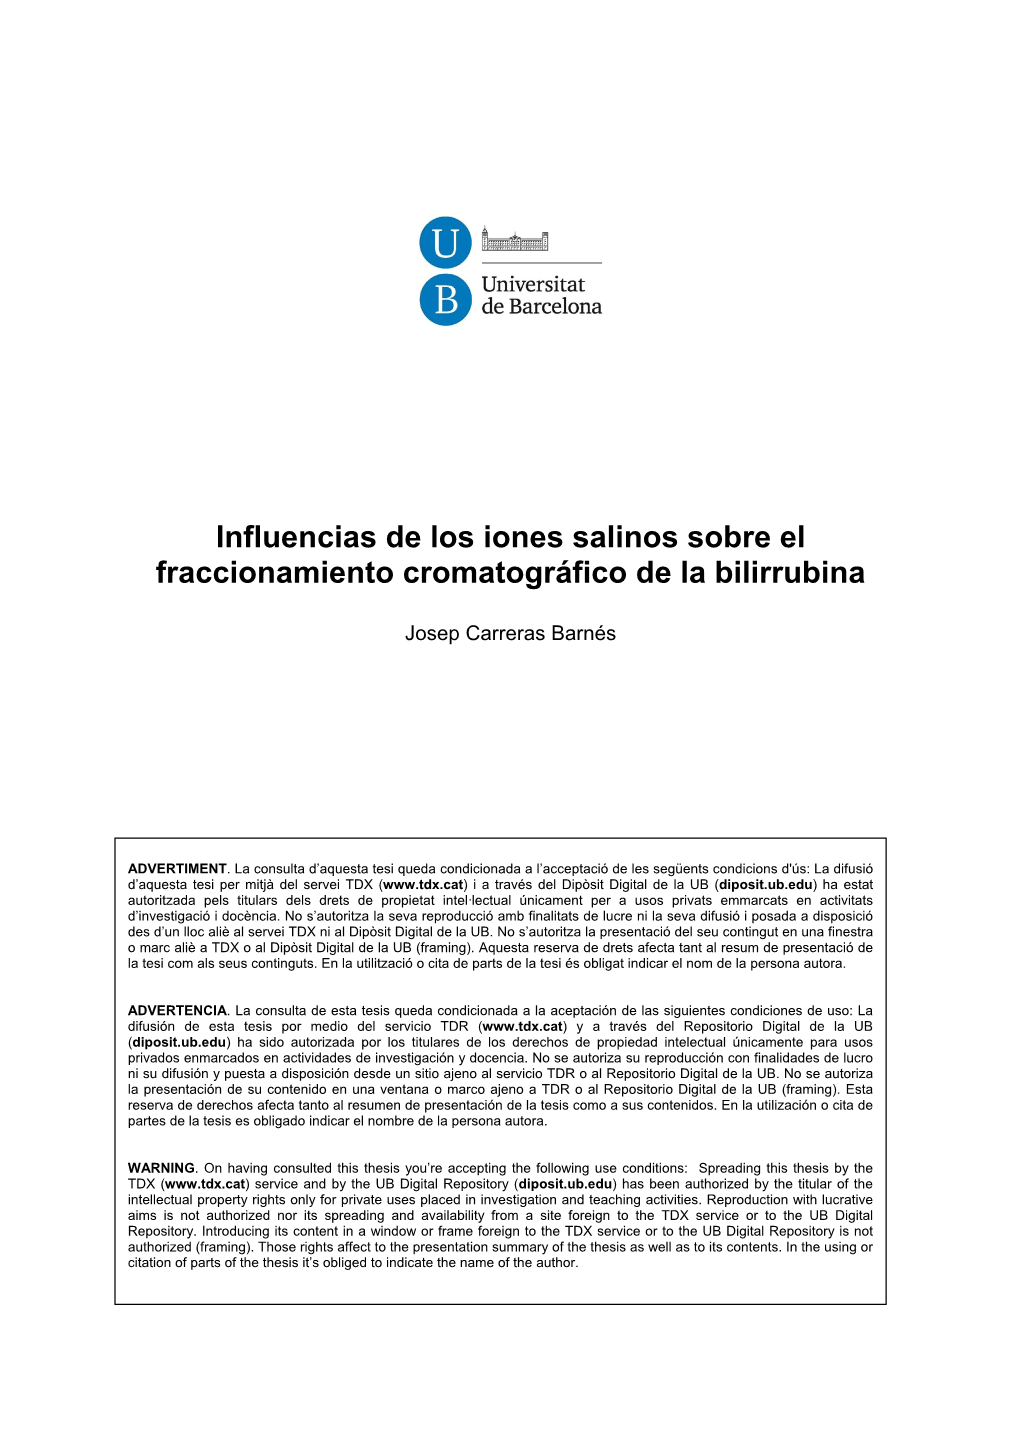 Influencias De Los Iones Salinos Sobre El Fraccionamiento Cromatográfico De La Bilirrubina